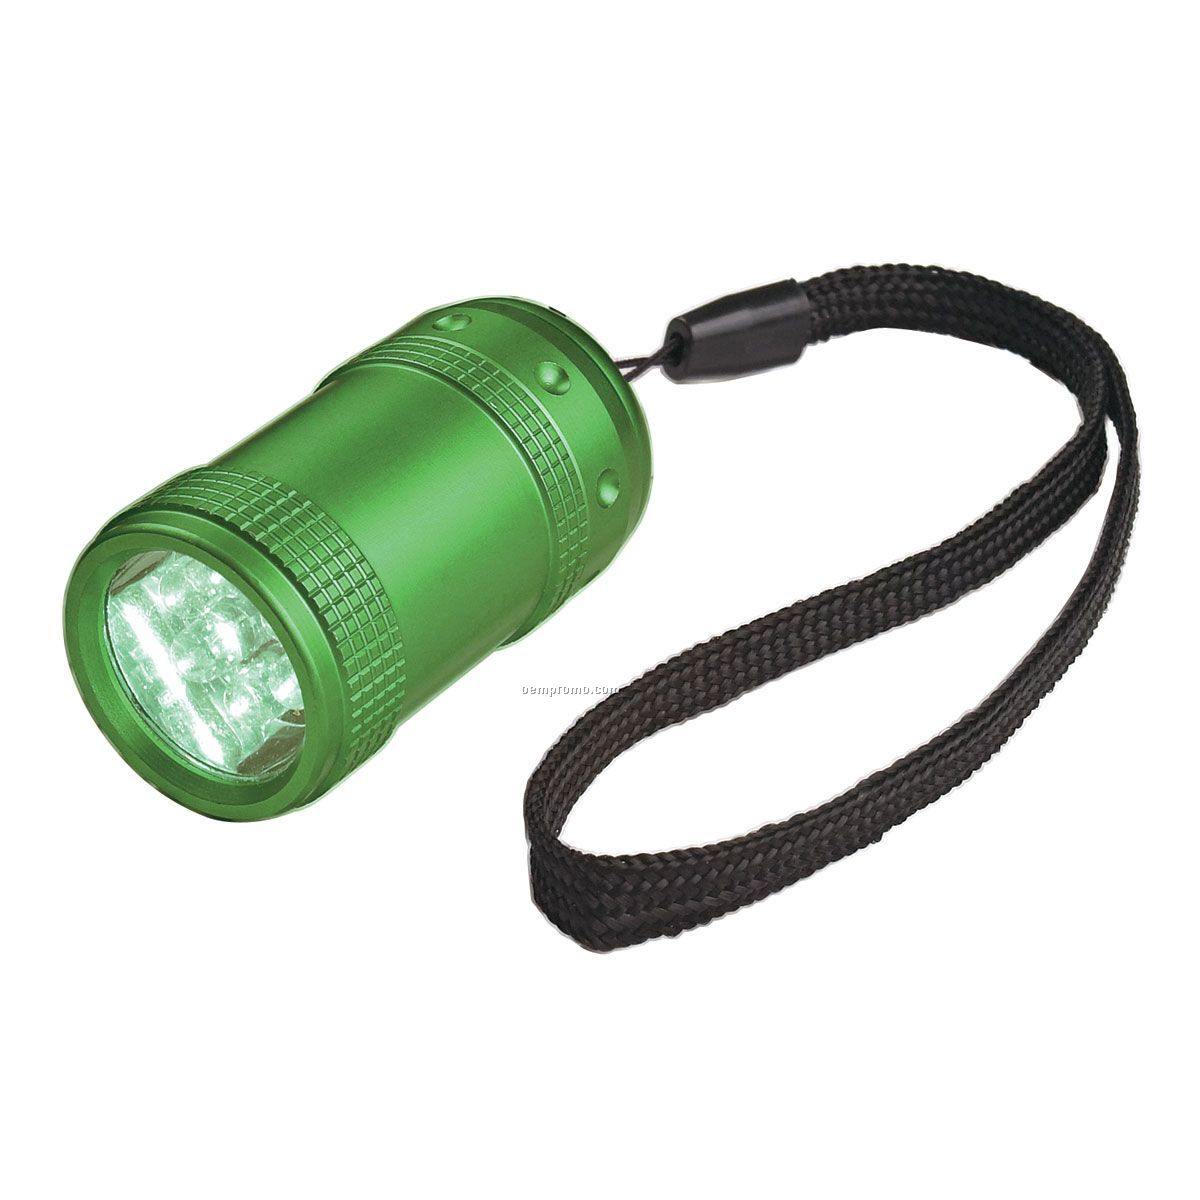 Square Light Up Flashlight W/ 6 Leds - Green